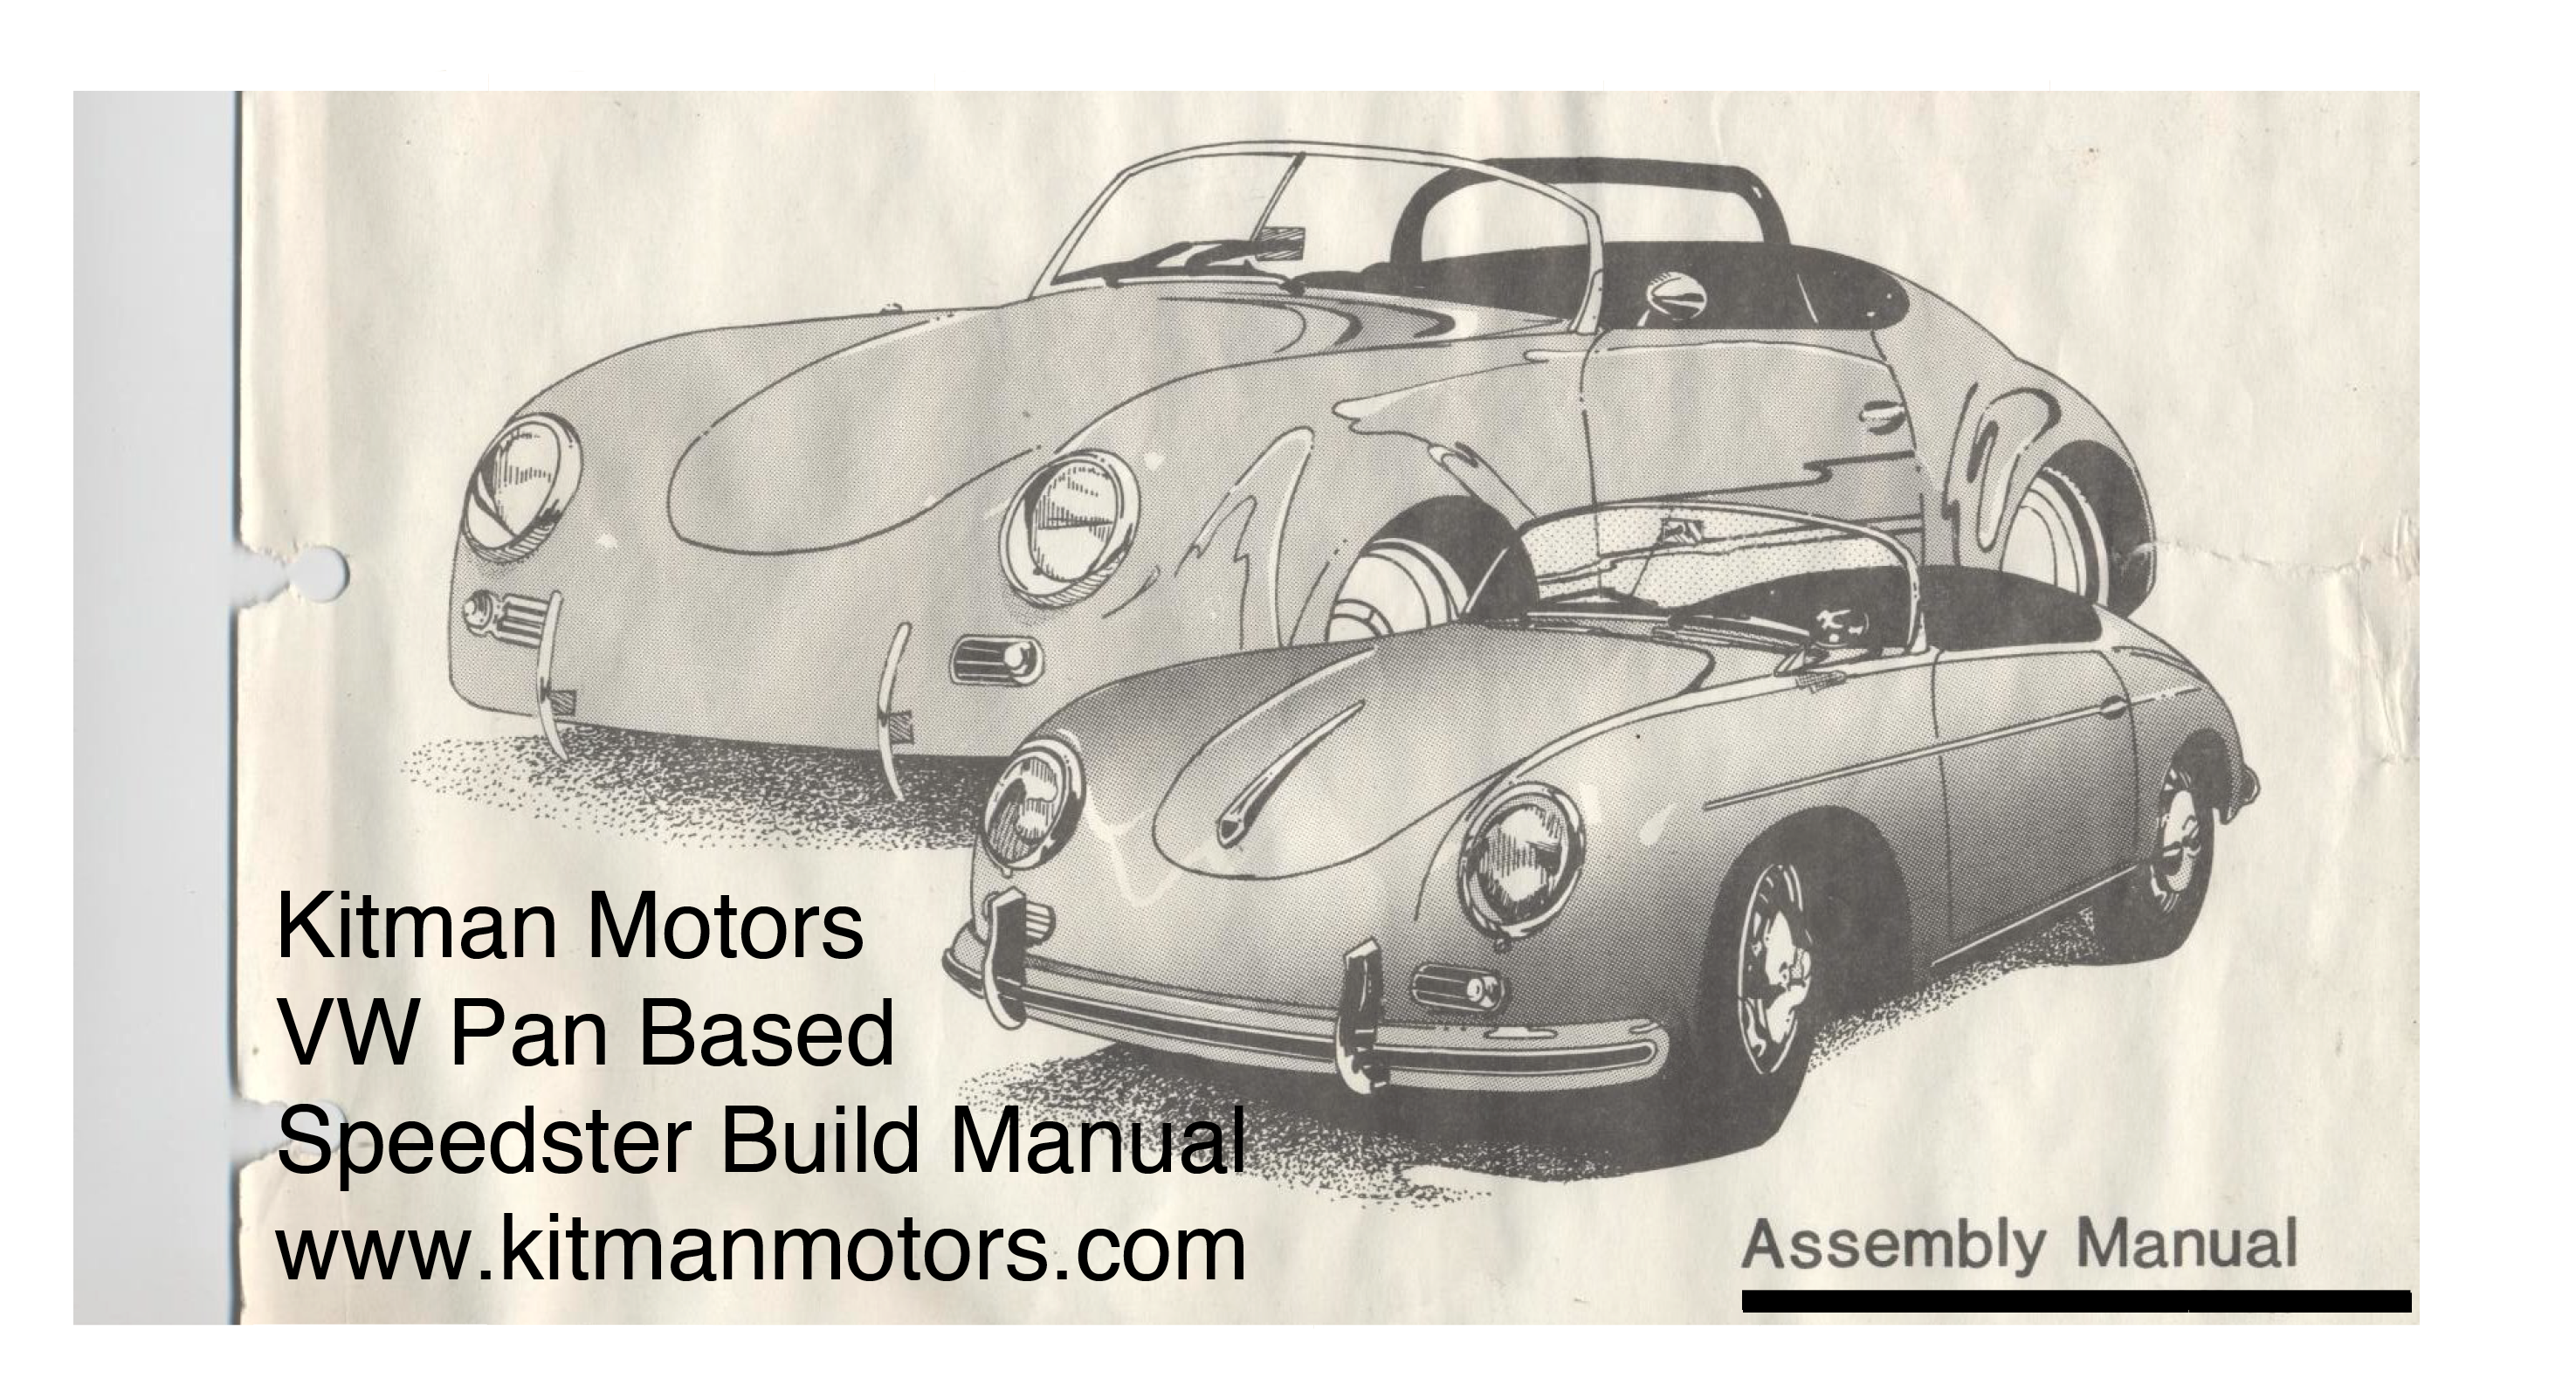 KitMan Motors Build Manual Cover